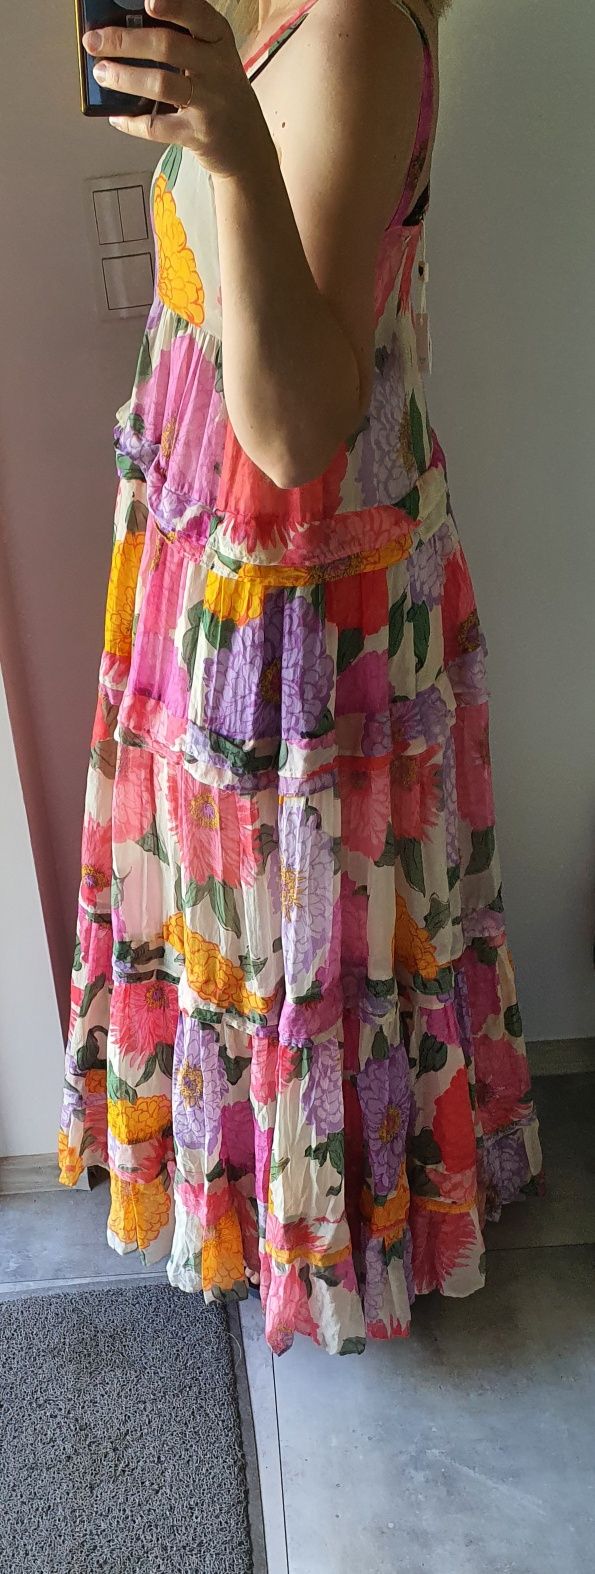 Śliczna sukienka twinset nowa długa kwiaty rozmiar xl 42